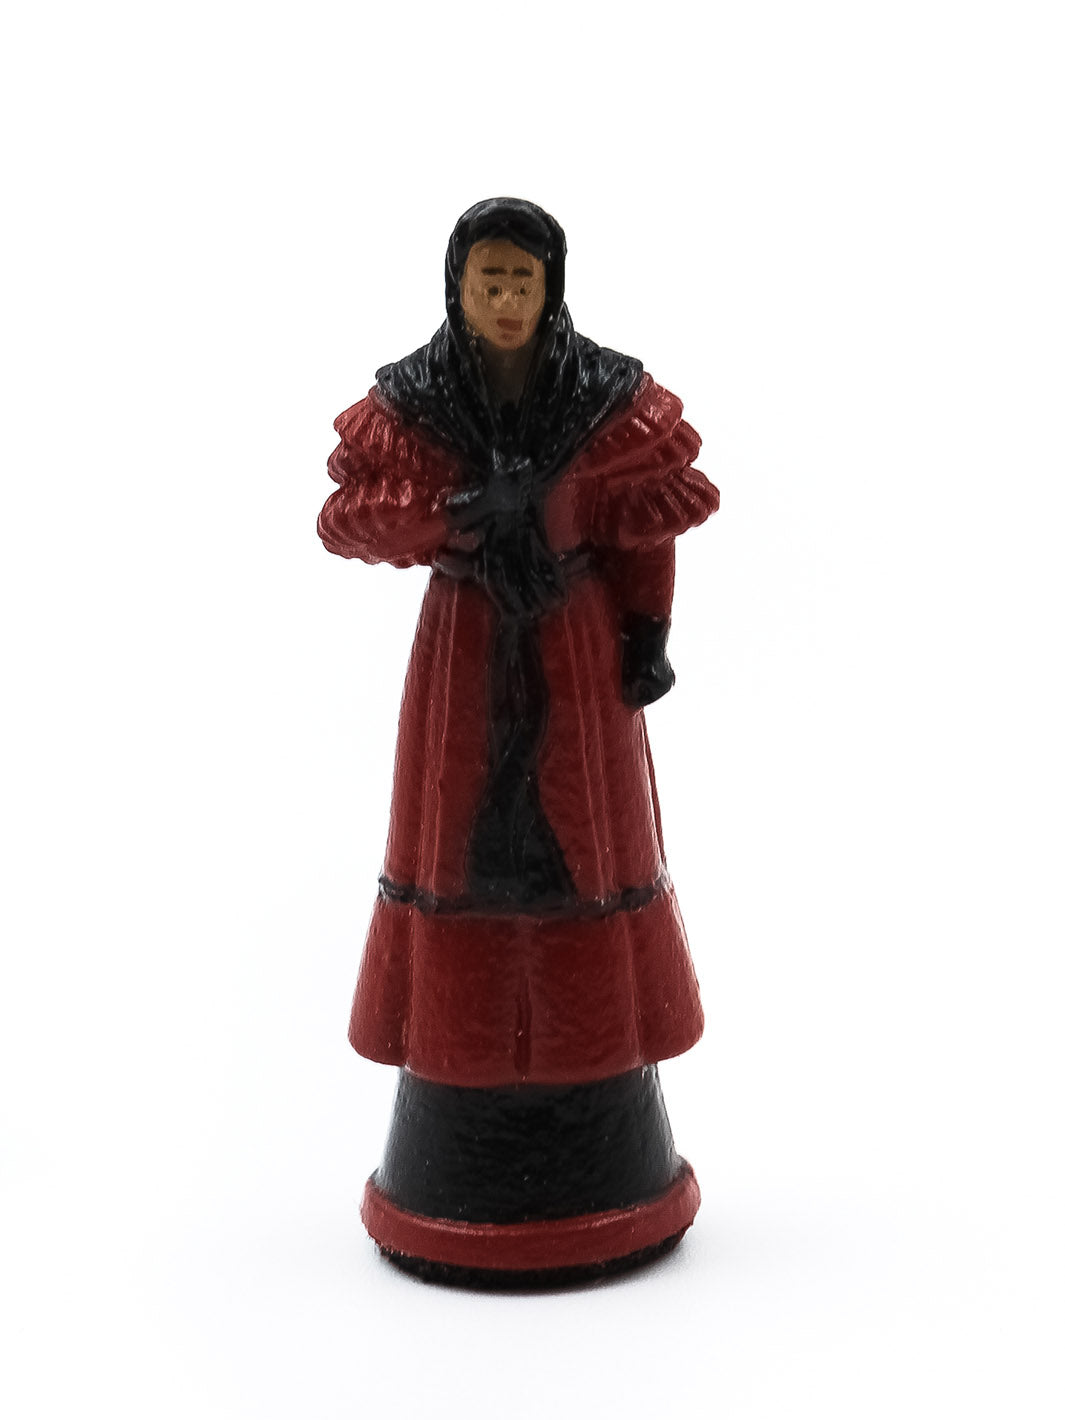 Piece Reine 2 portant une robe rouge et noire vue de face